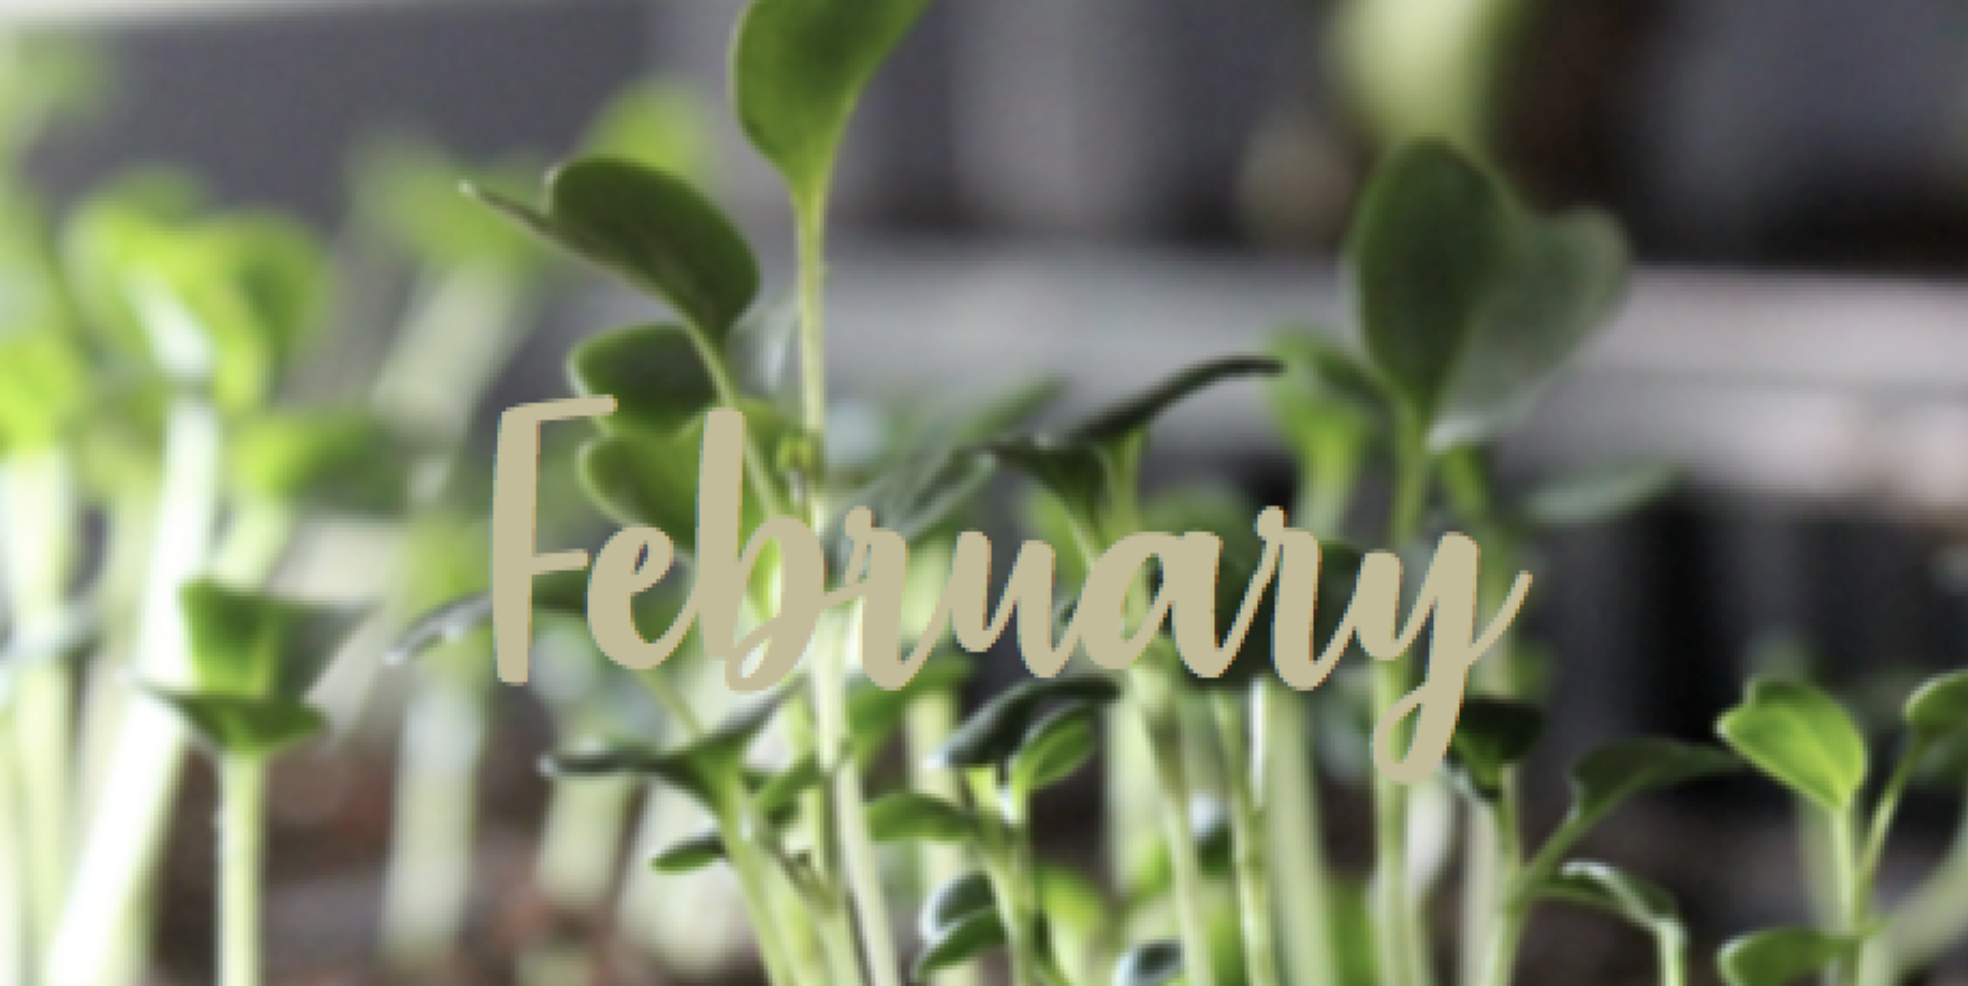 Februari – längtans tid